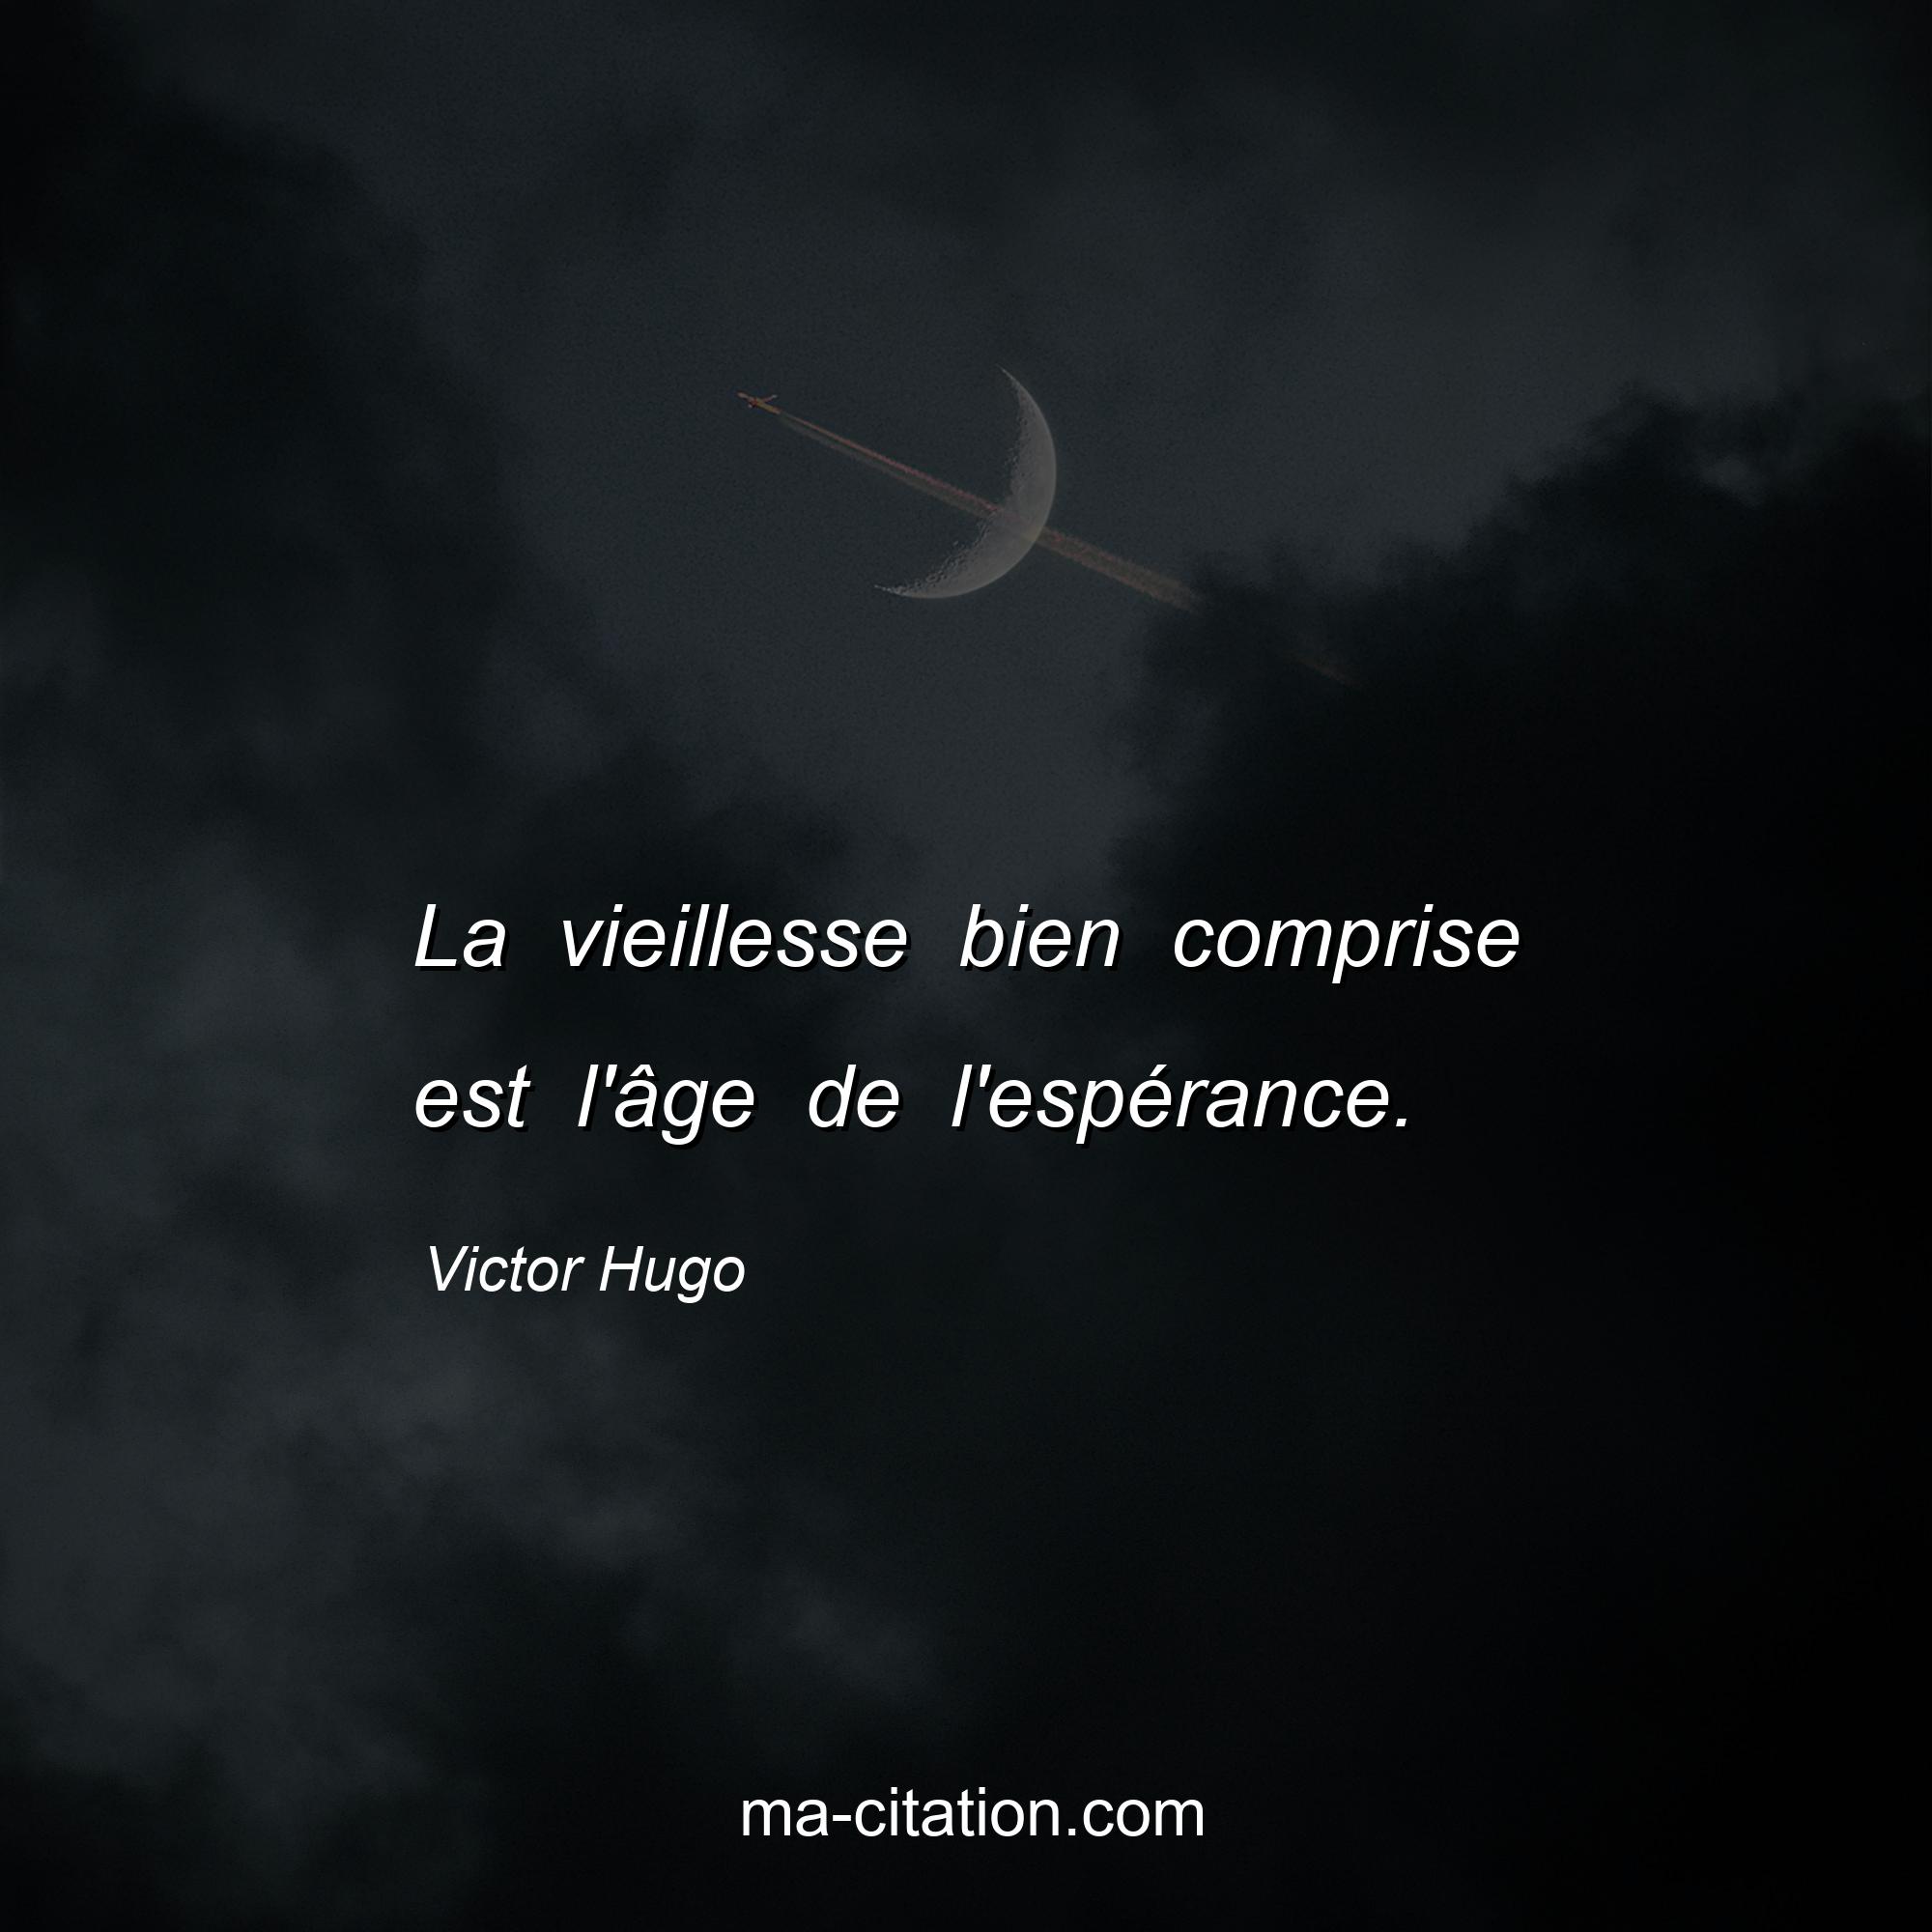 Victor Hugo : La vieillesse bien comprise est l'âge de l'espérance.